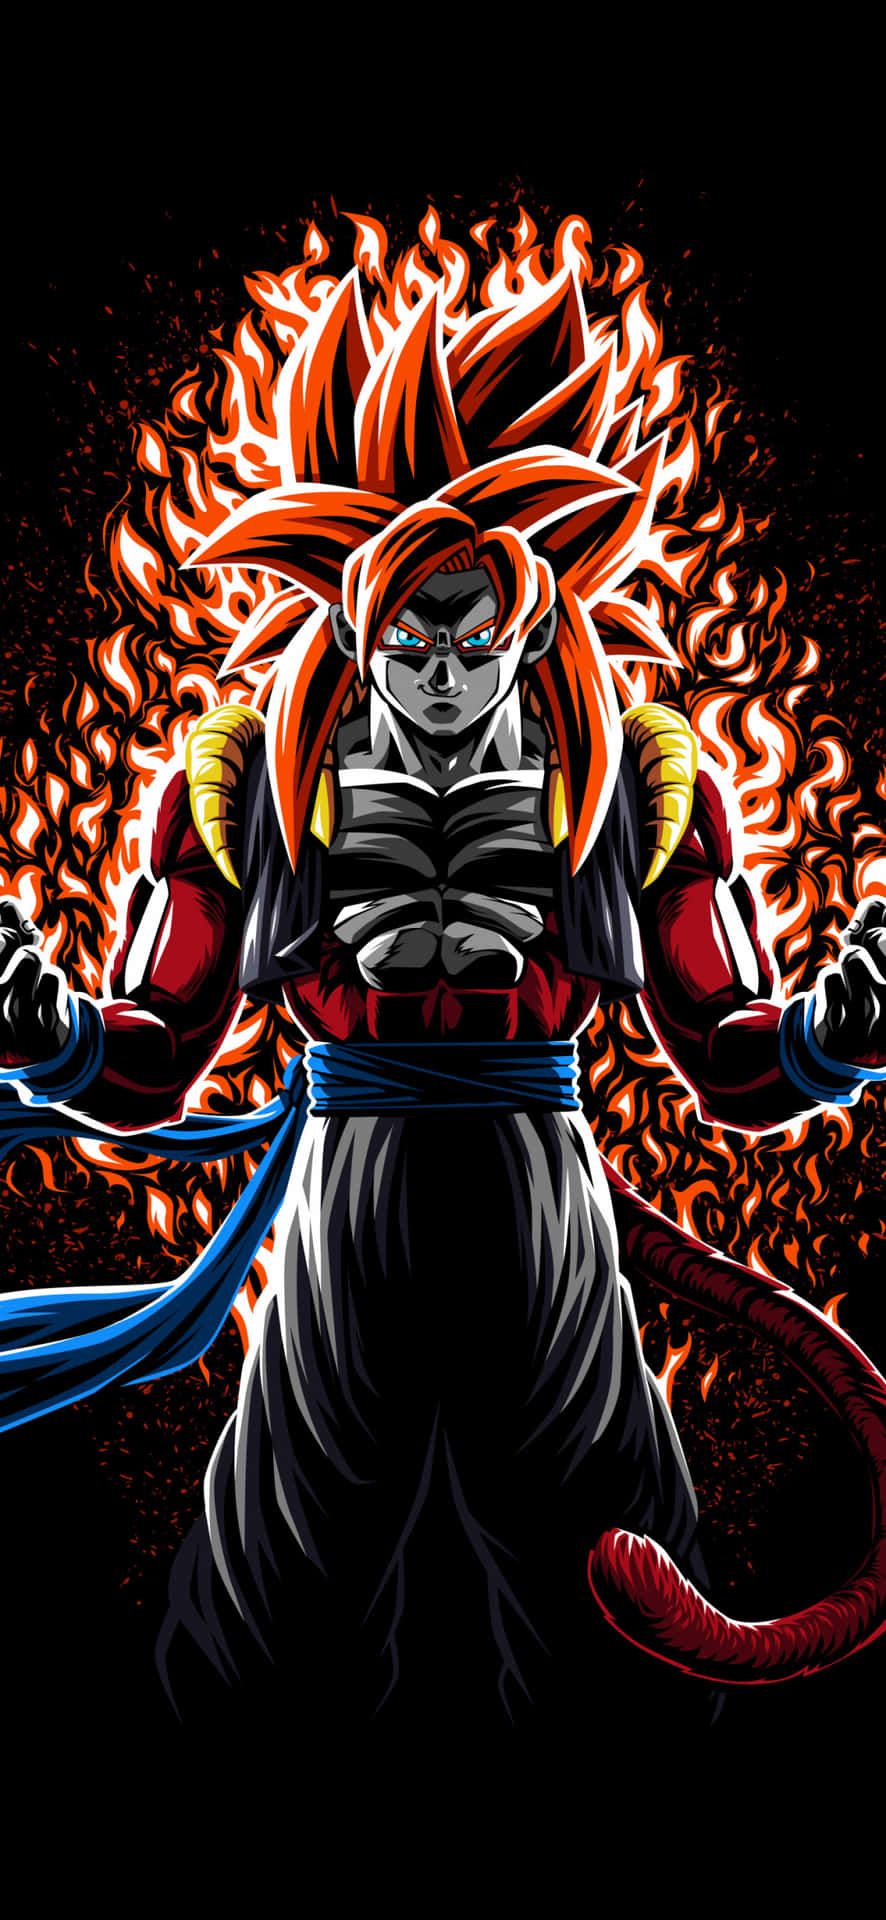 Gokuavslöjar Sin Super Saiyan 4-kraft På Sin Dator- Eller Mobilbakgrundsbild. Wallpaper